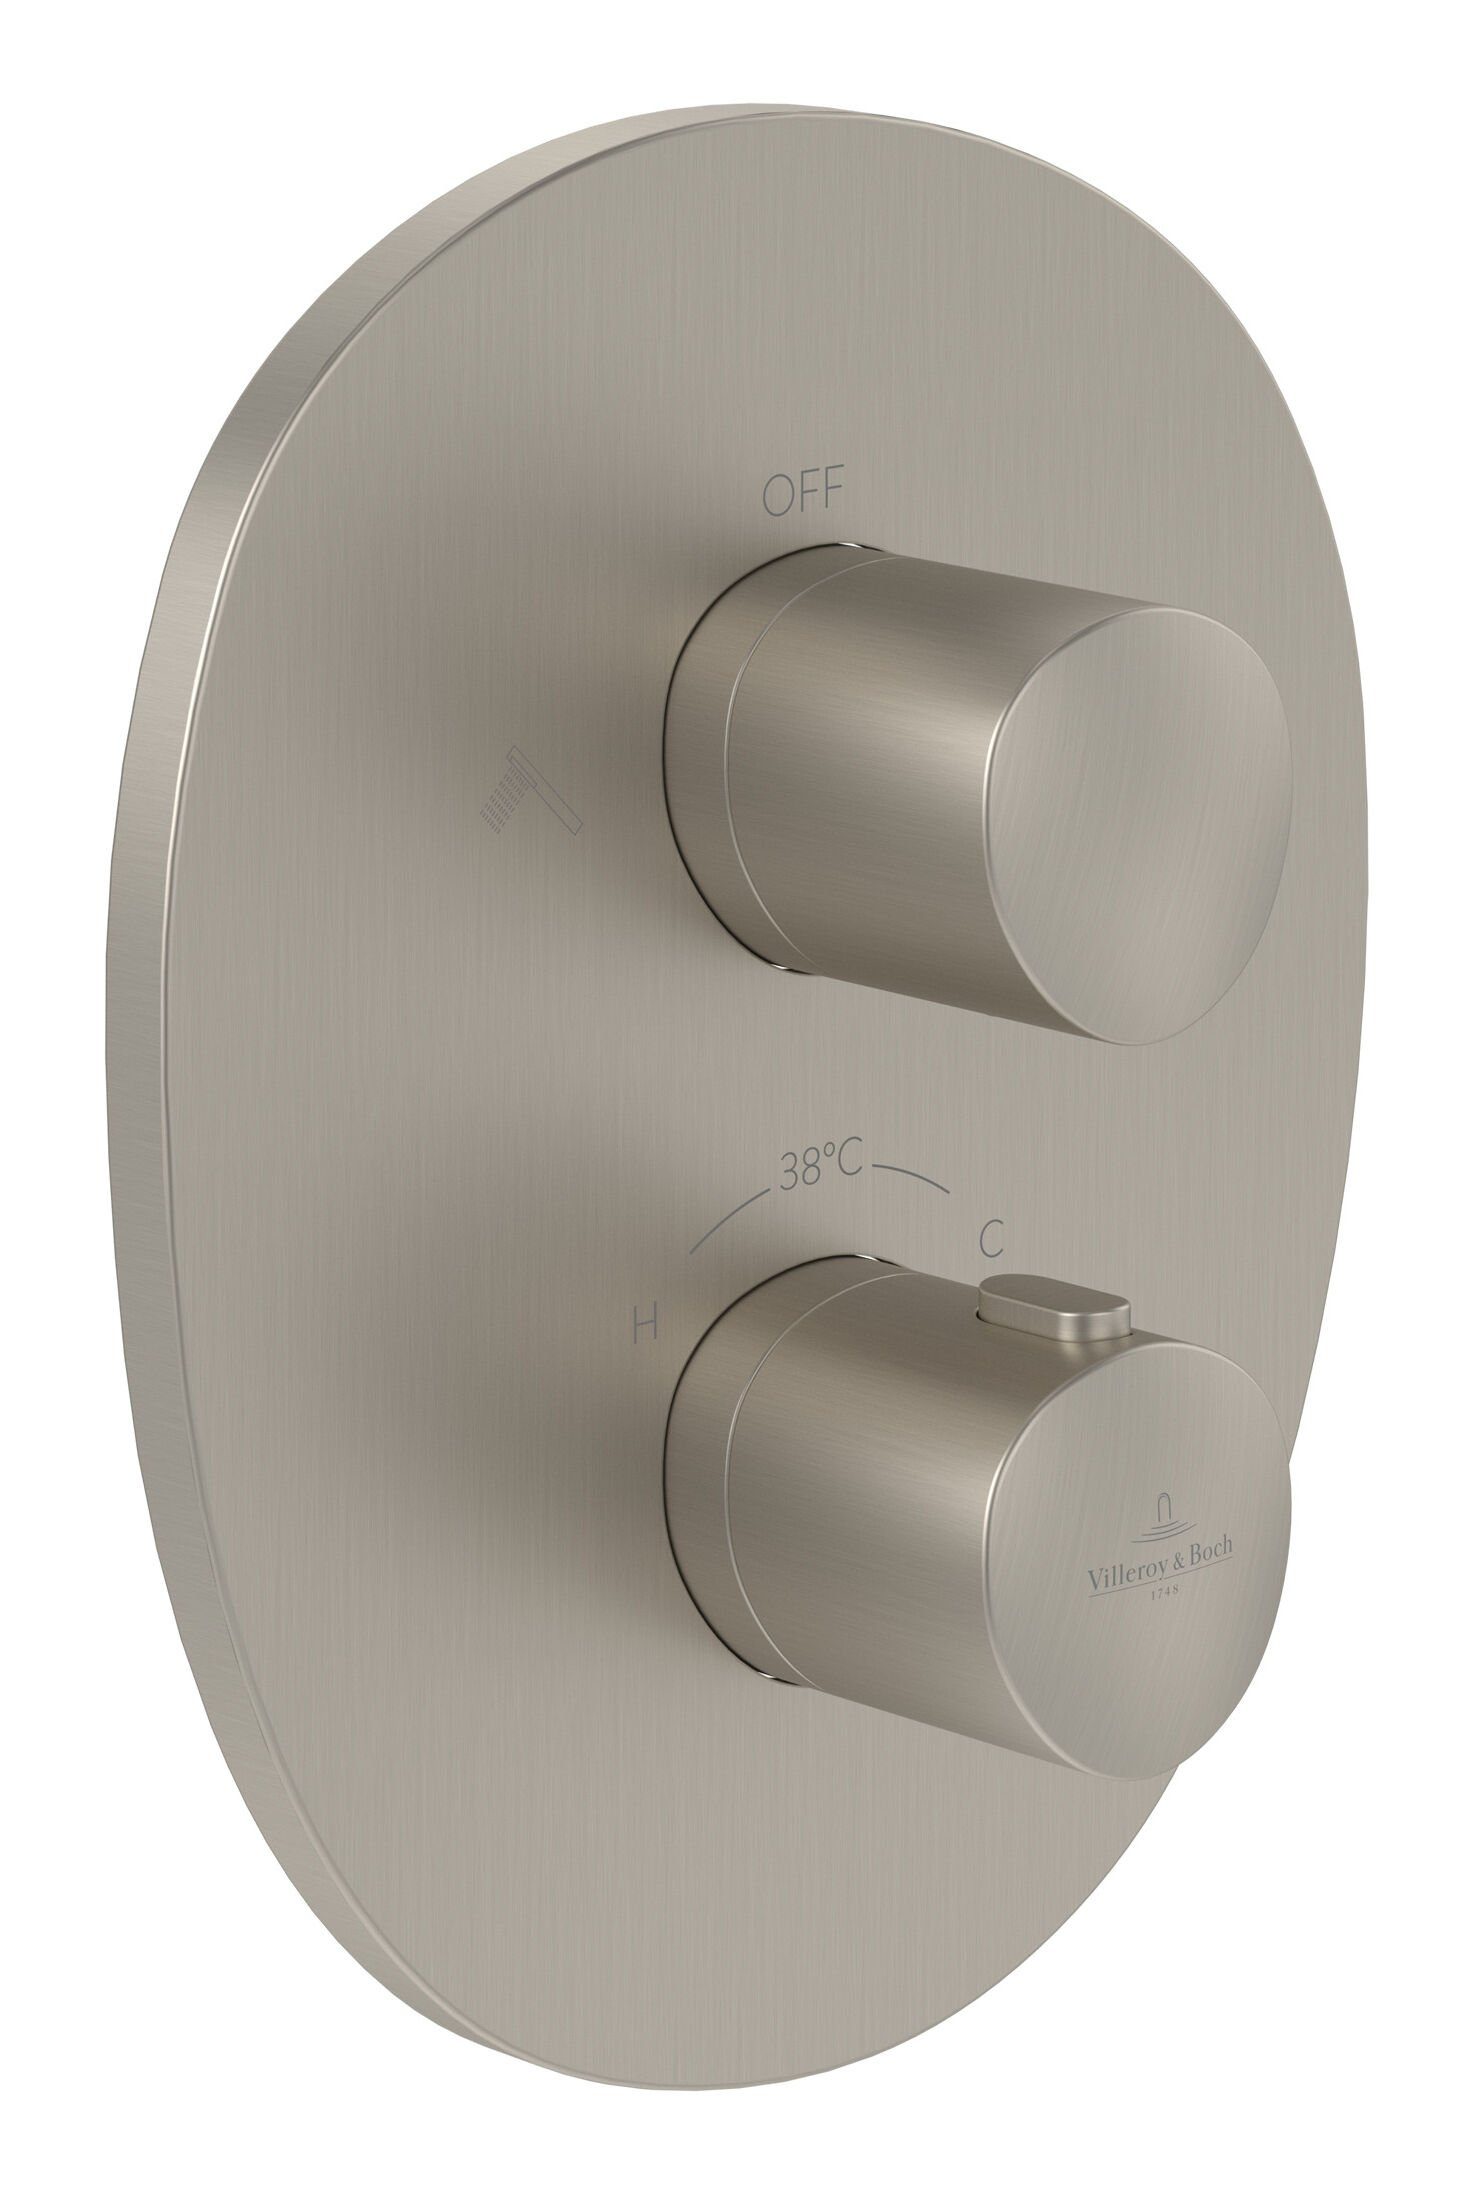 Villeroy & Boch Unterputzarmatur Antao Thermostat, mit Umsteller, Wandmontage - Brushed Nickel Matt